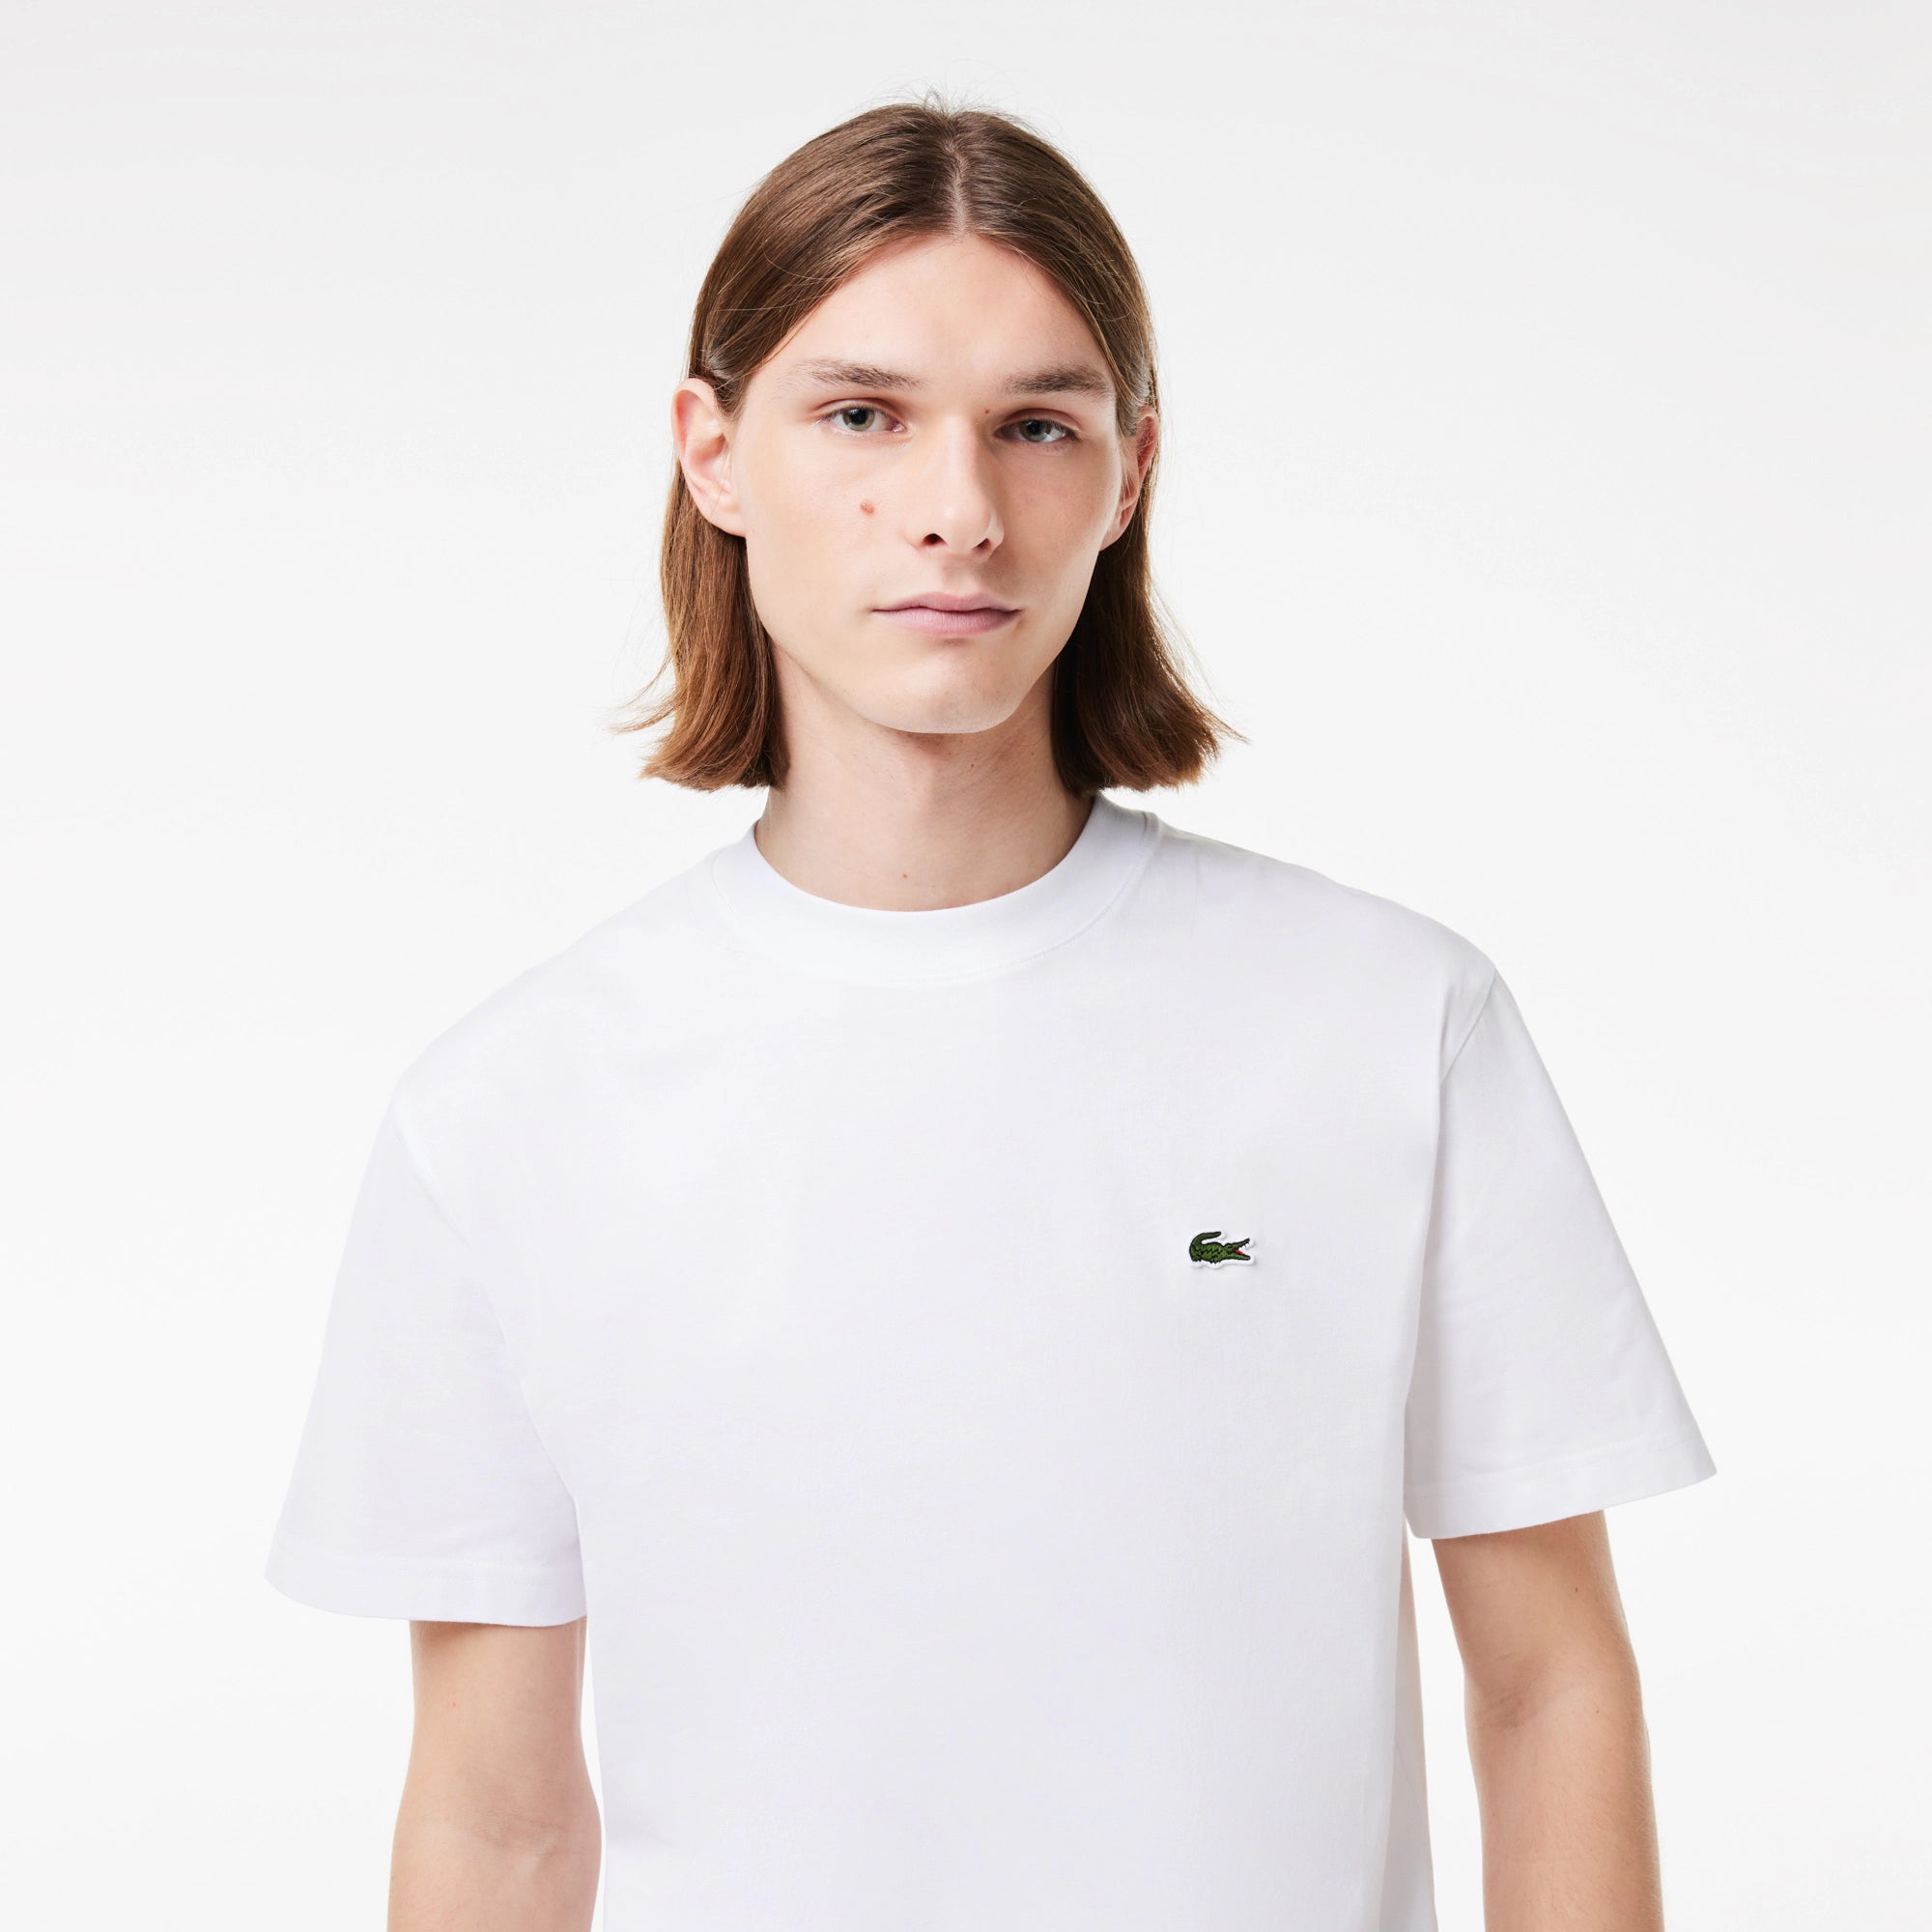 Camiseta Lacoste de Corte Clásico de Punto de Algodón Blanca